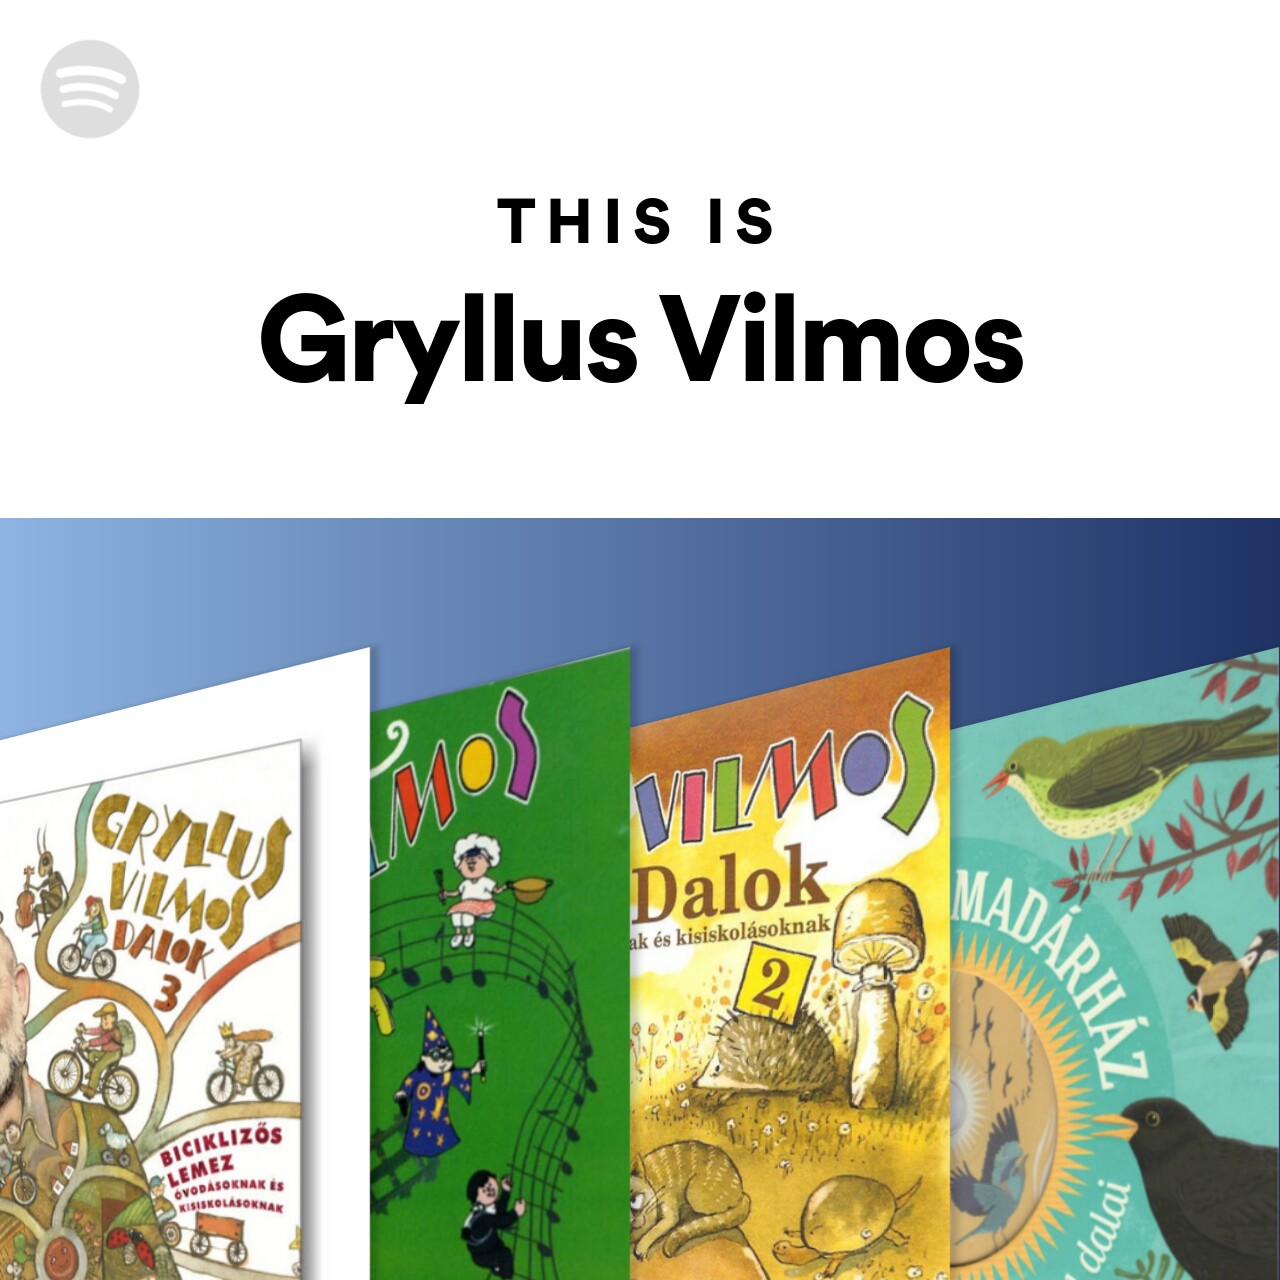 This Is Gryllus Vilmos